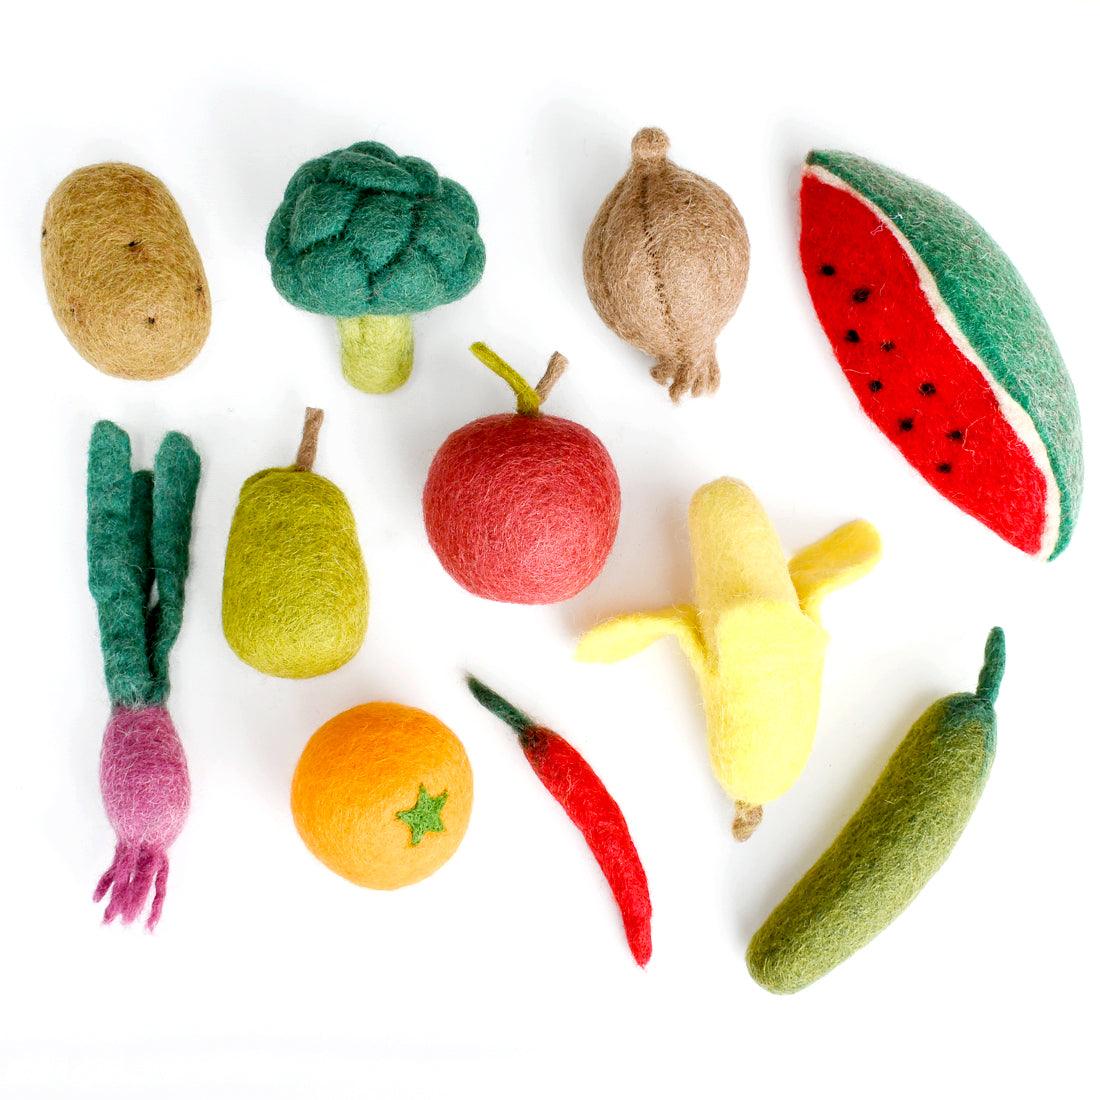 Felt Vegetables and Fruits Set B - 11 pieces - Tara Treasures